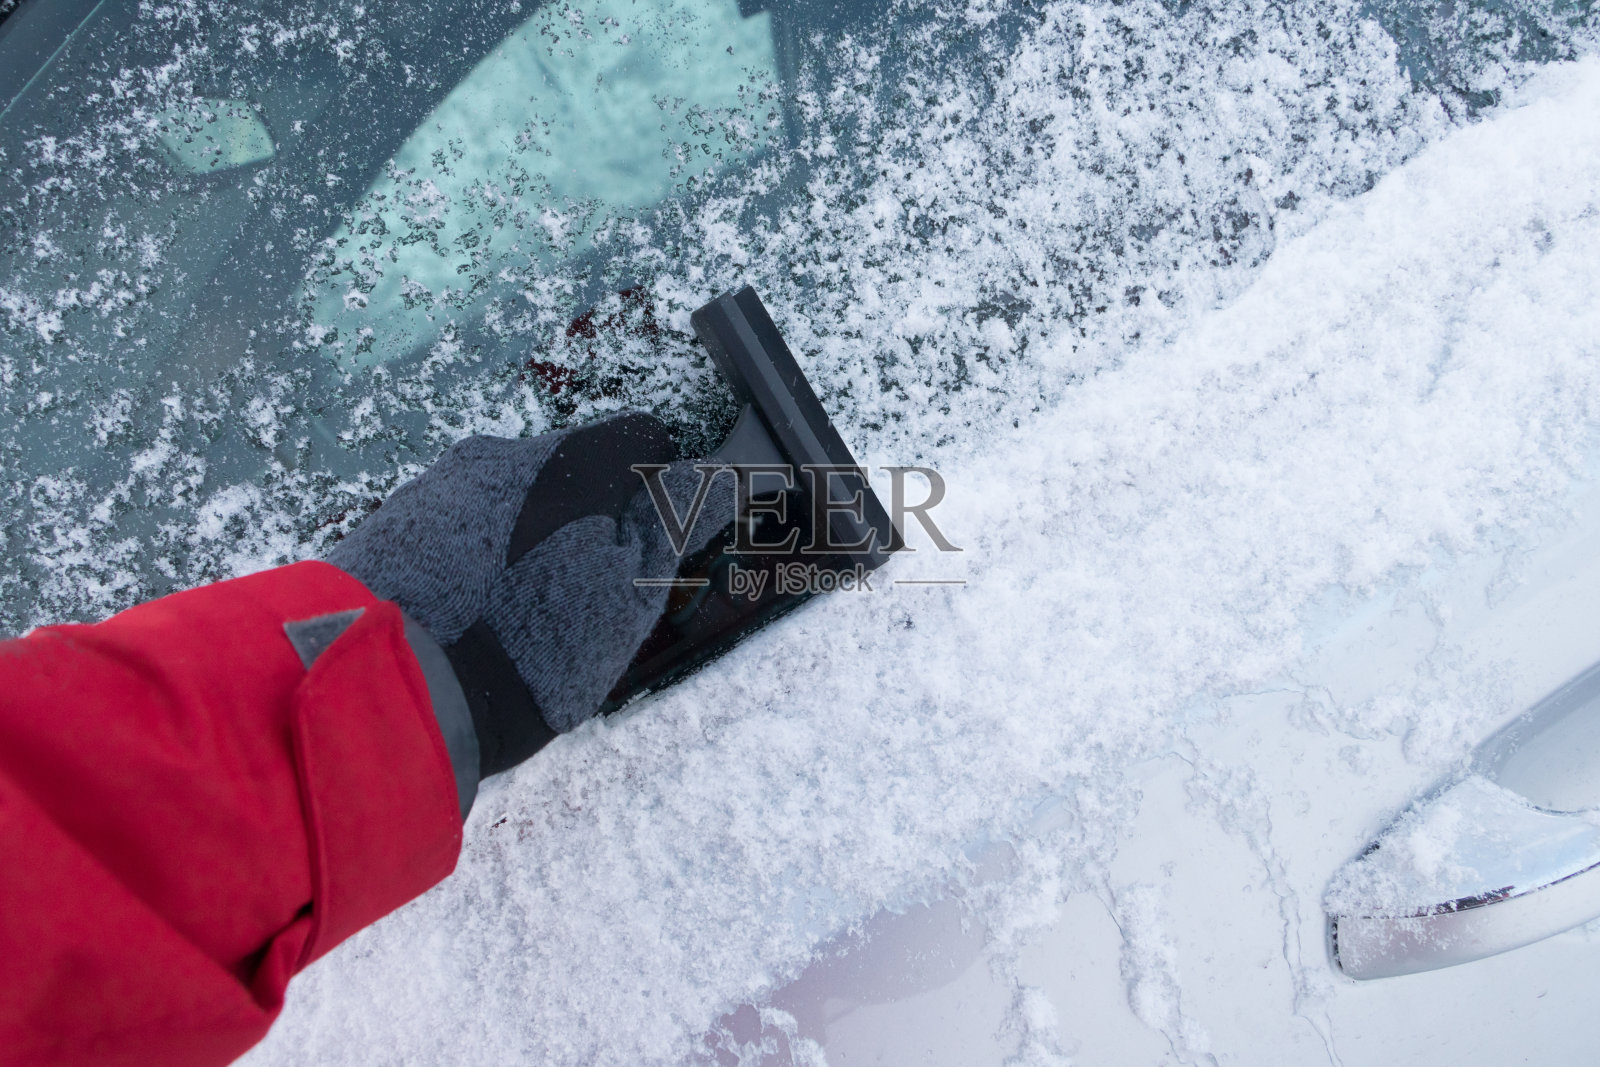 冬天的暴风雪使汽车被雪覆盖。男人的手在开车前清理汽车挡风玻璃上的雪。降雪气候问题照片摄影图片